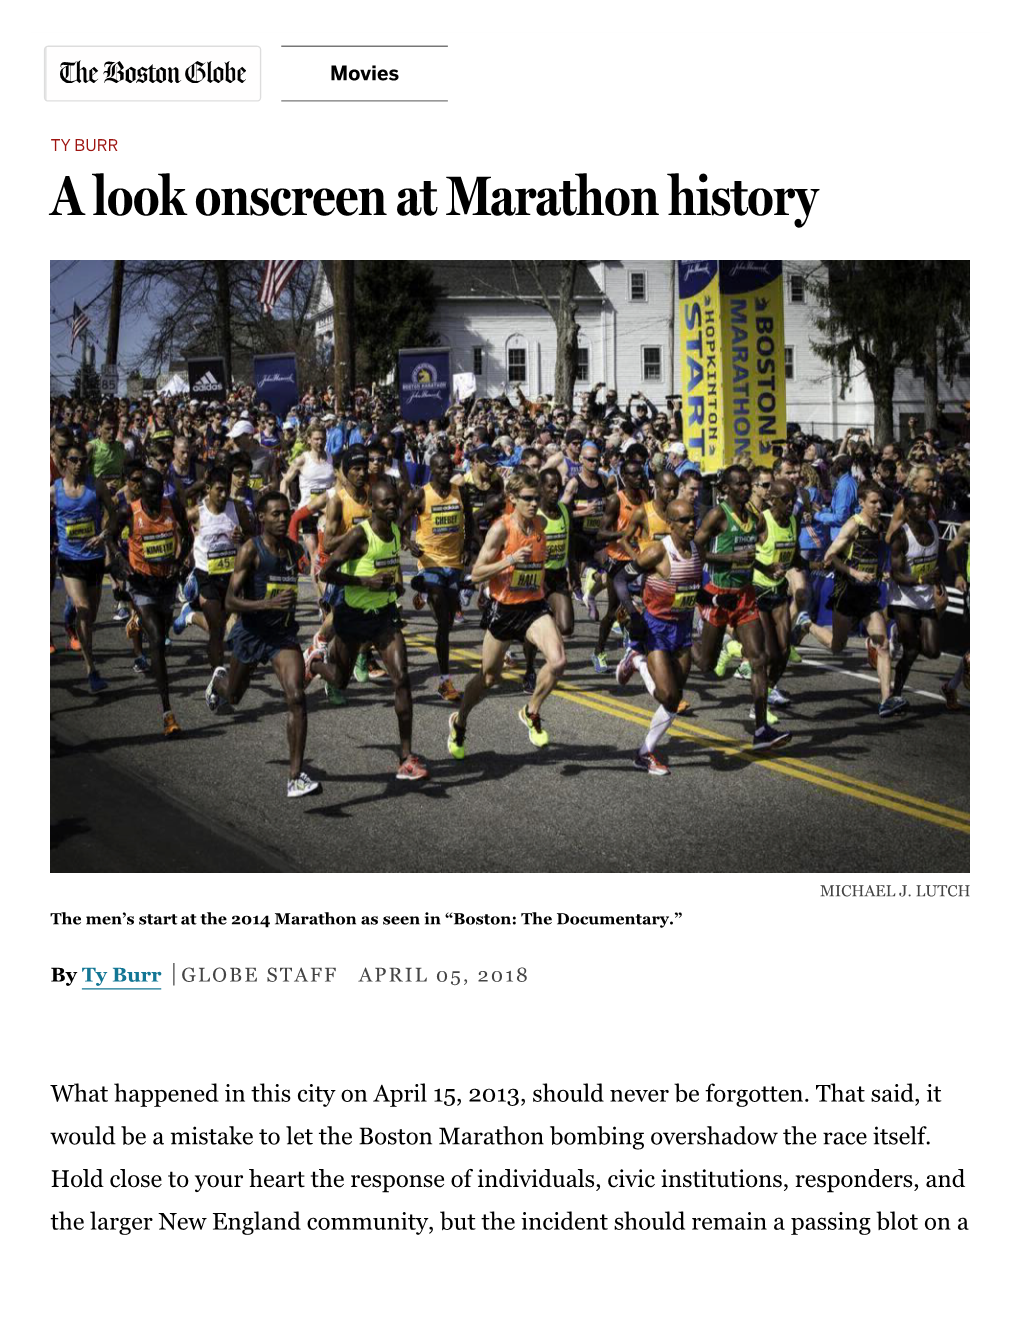 A Look Onscreen at Marathon History